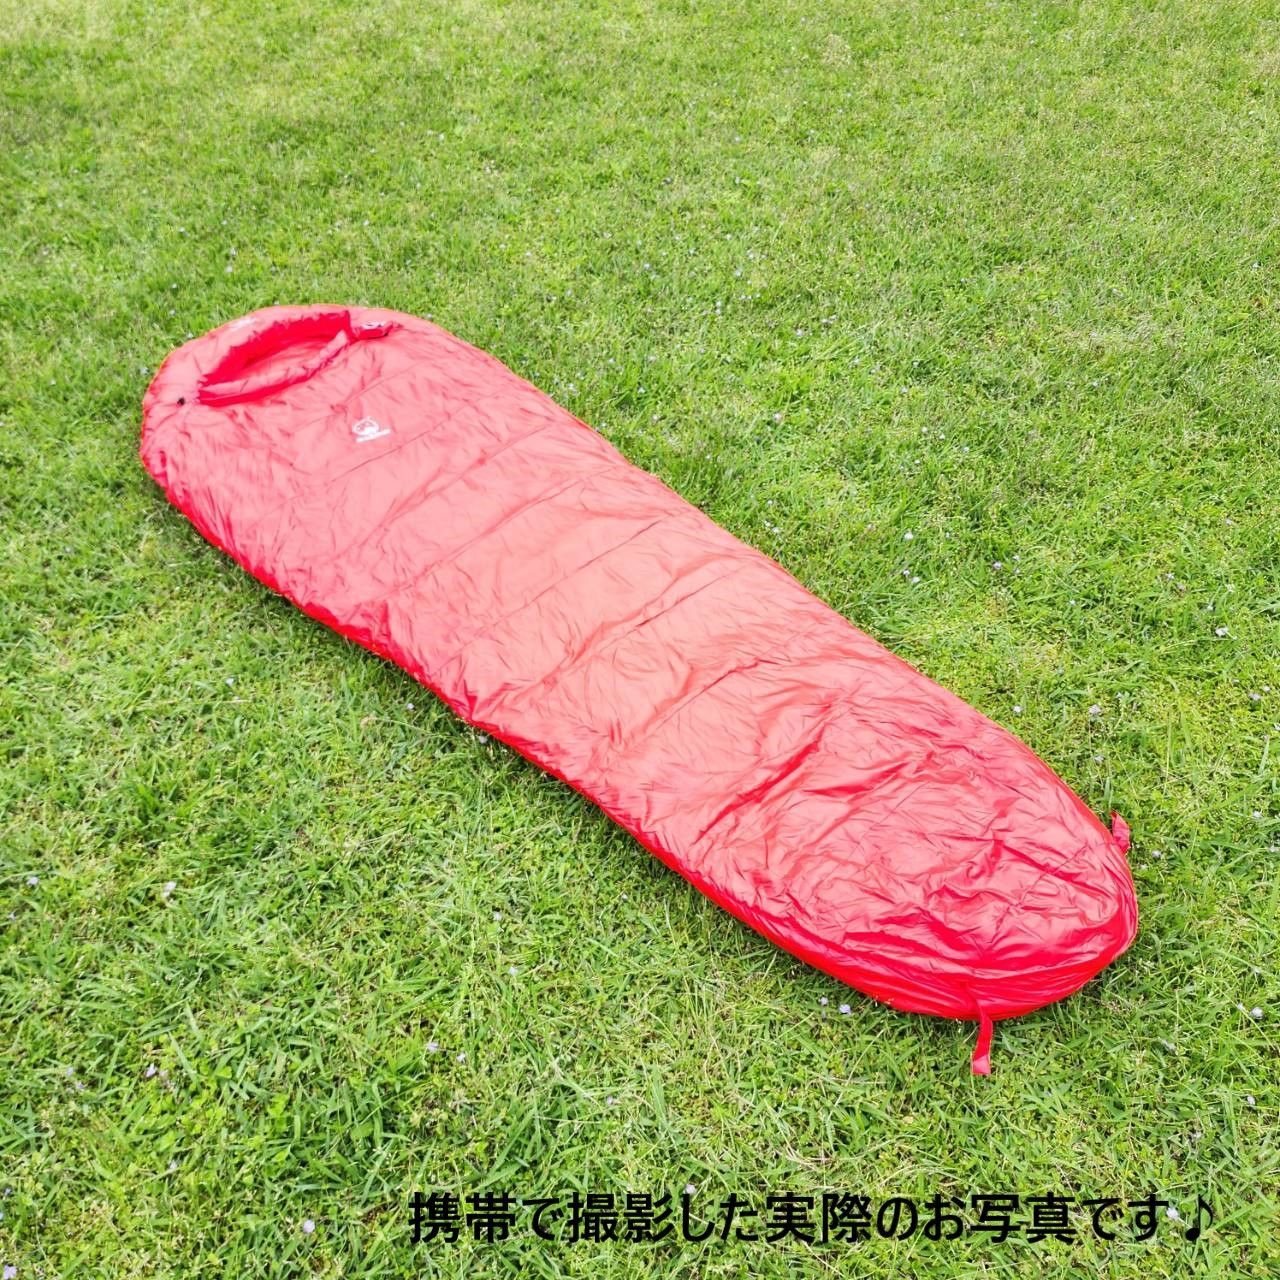 アウトドア 防水 グース ダウン マミー型 寝袋 シュラフ グリーン 700g-